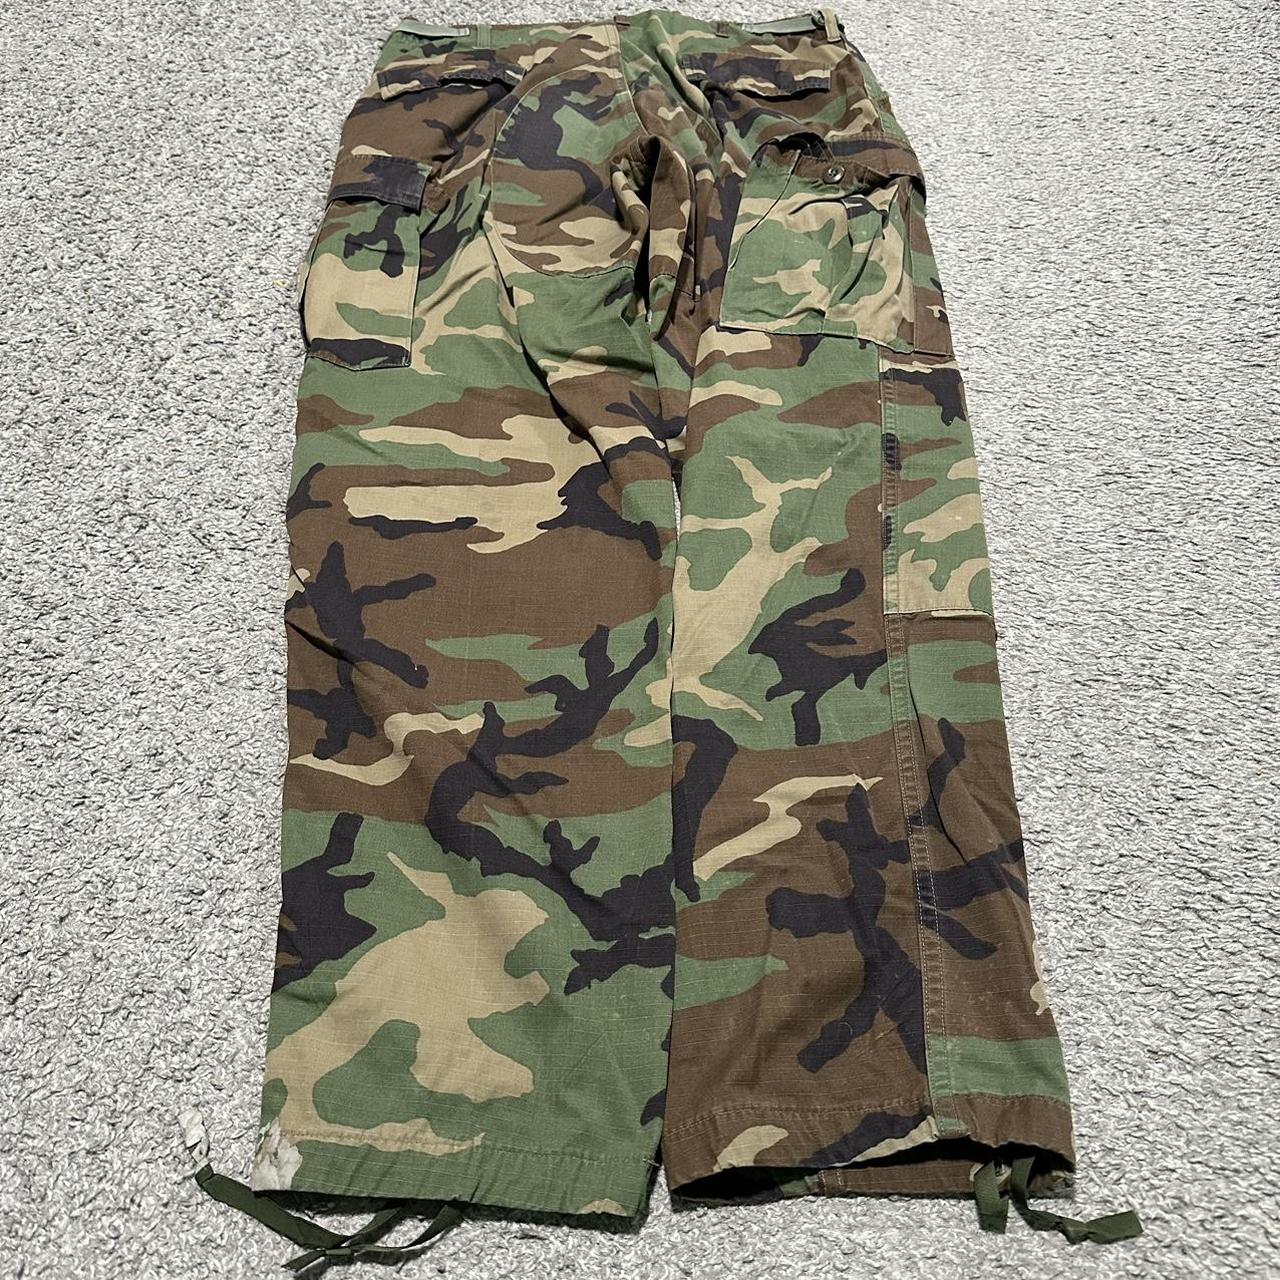 Vintage 90’s Army Camo Cargo Pants Men’s size... - Depop